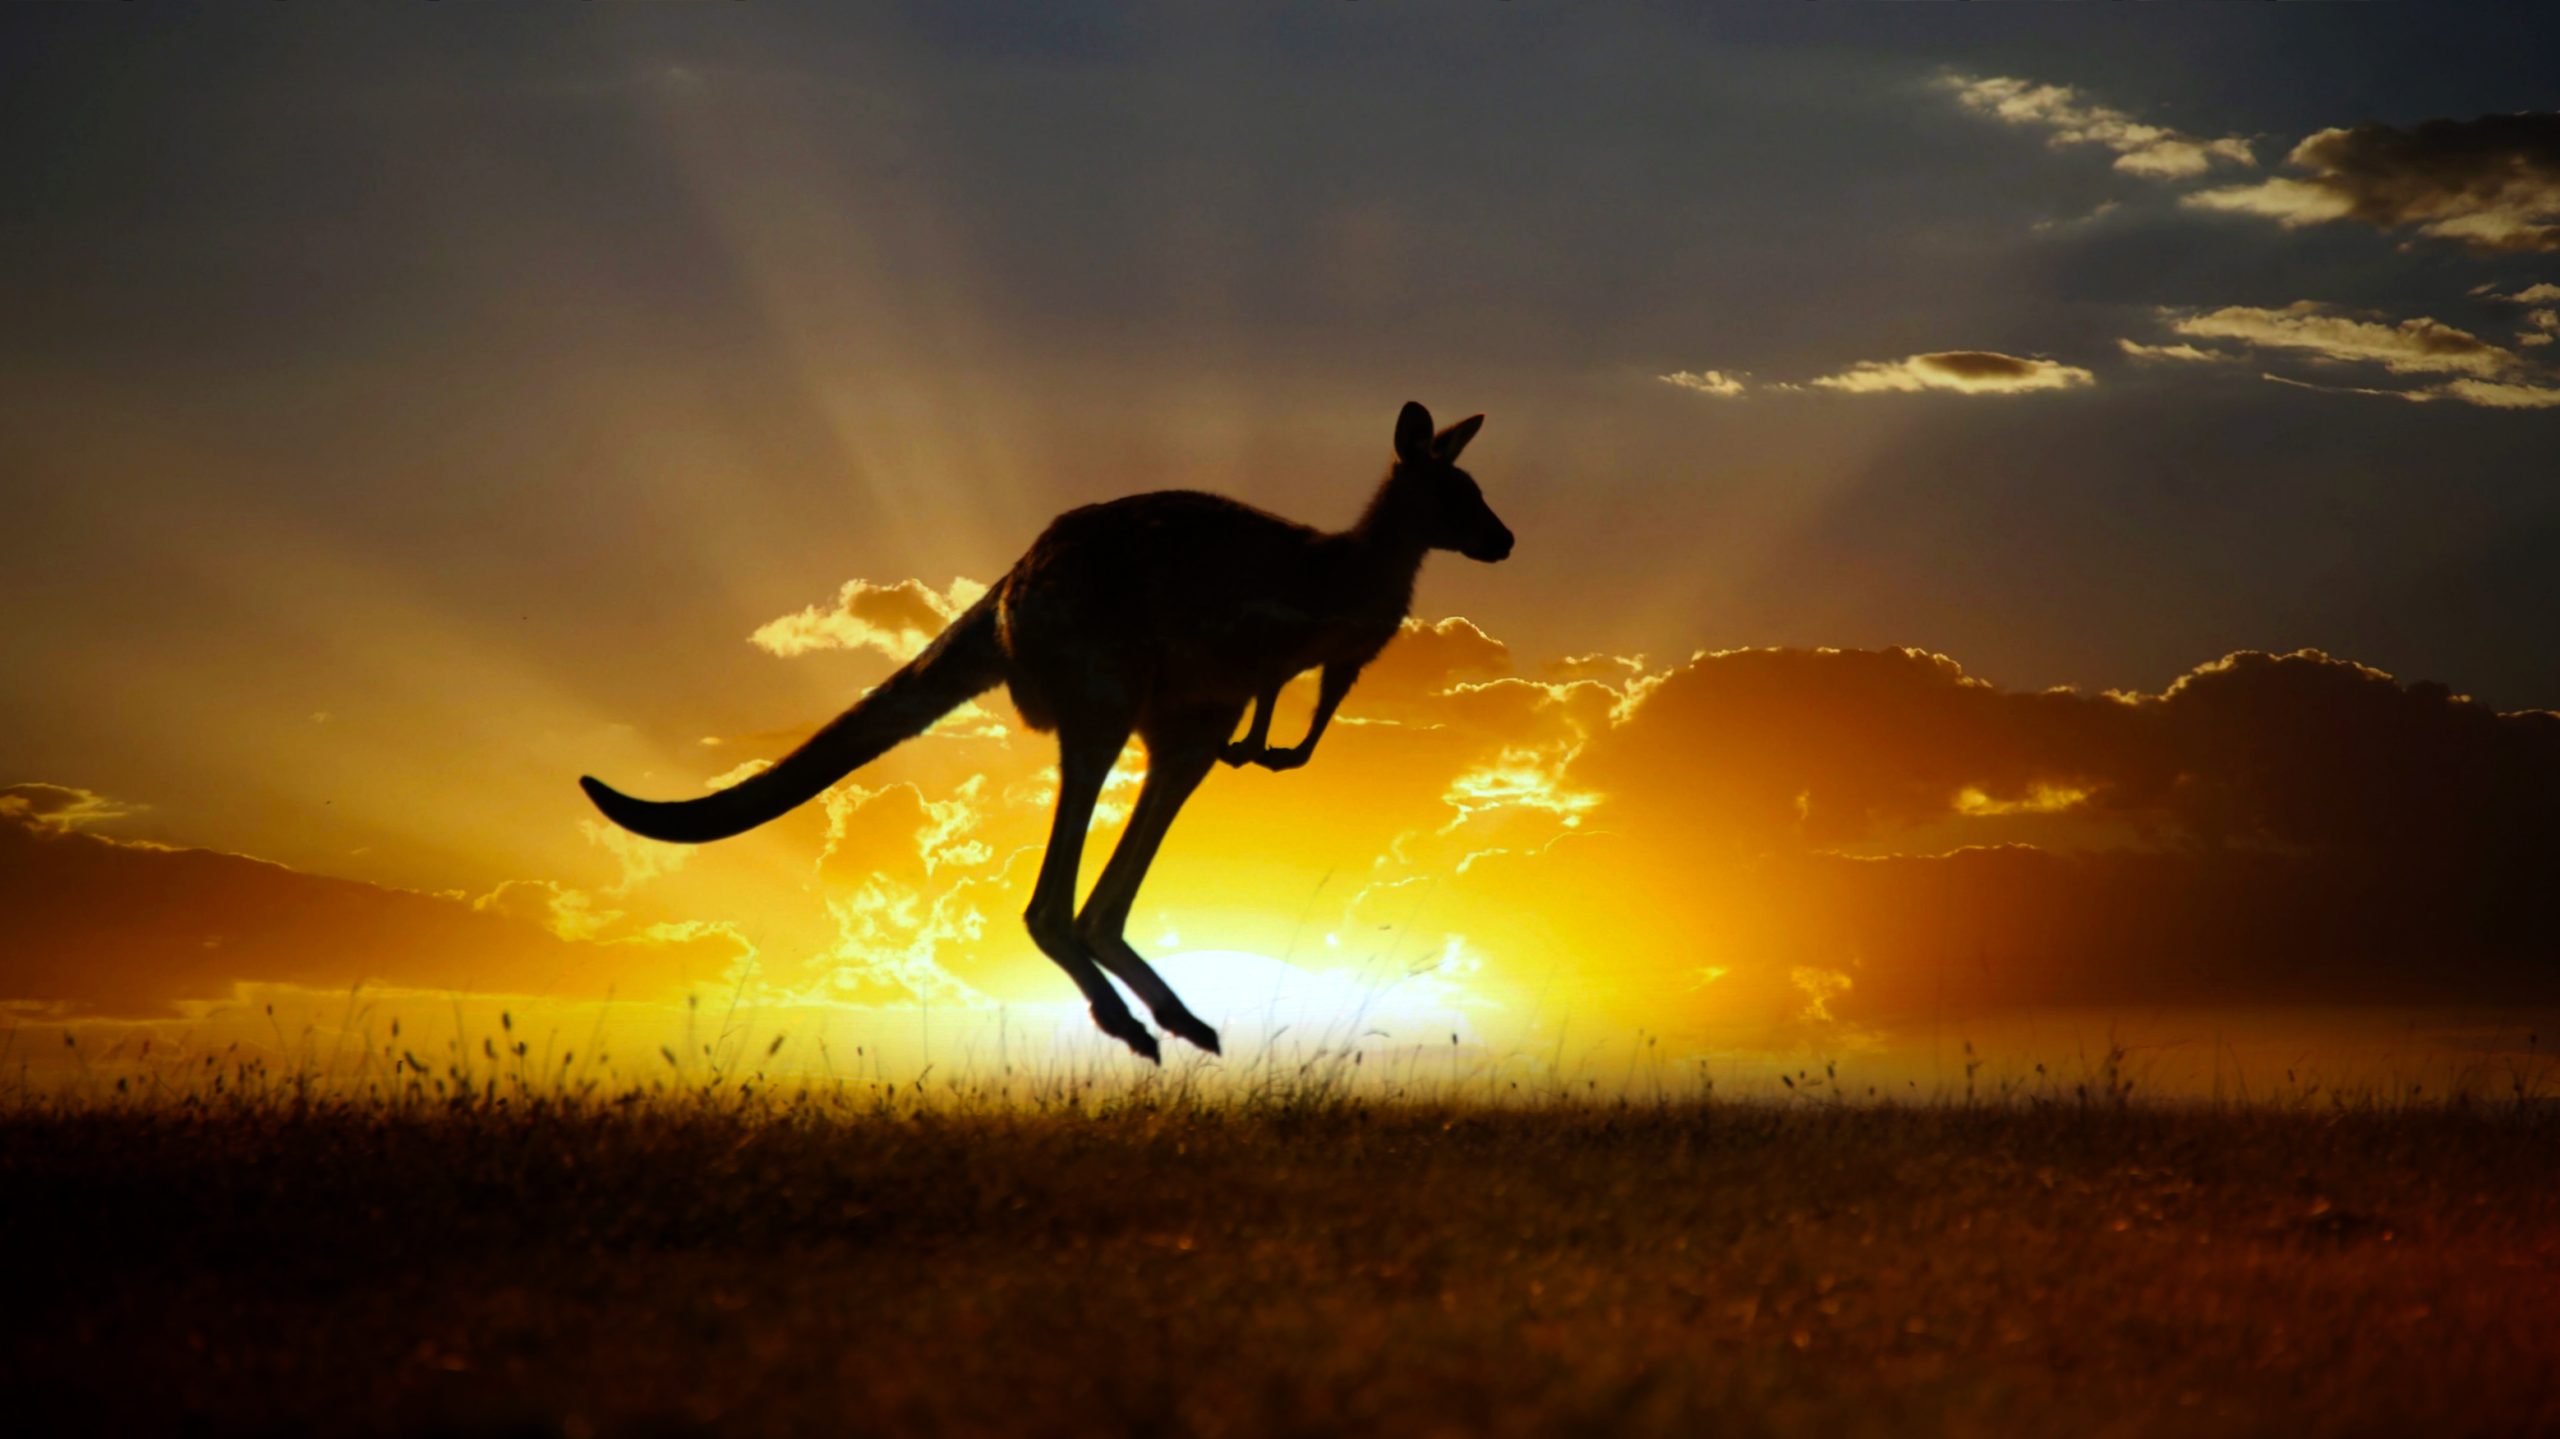 A photograph of a kangaroo and the sunset. Depositphotos.